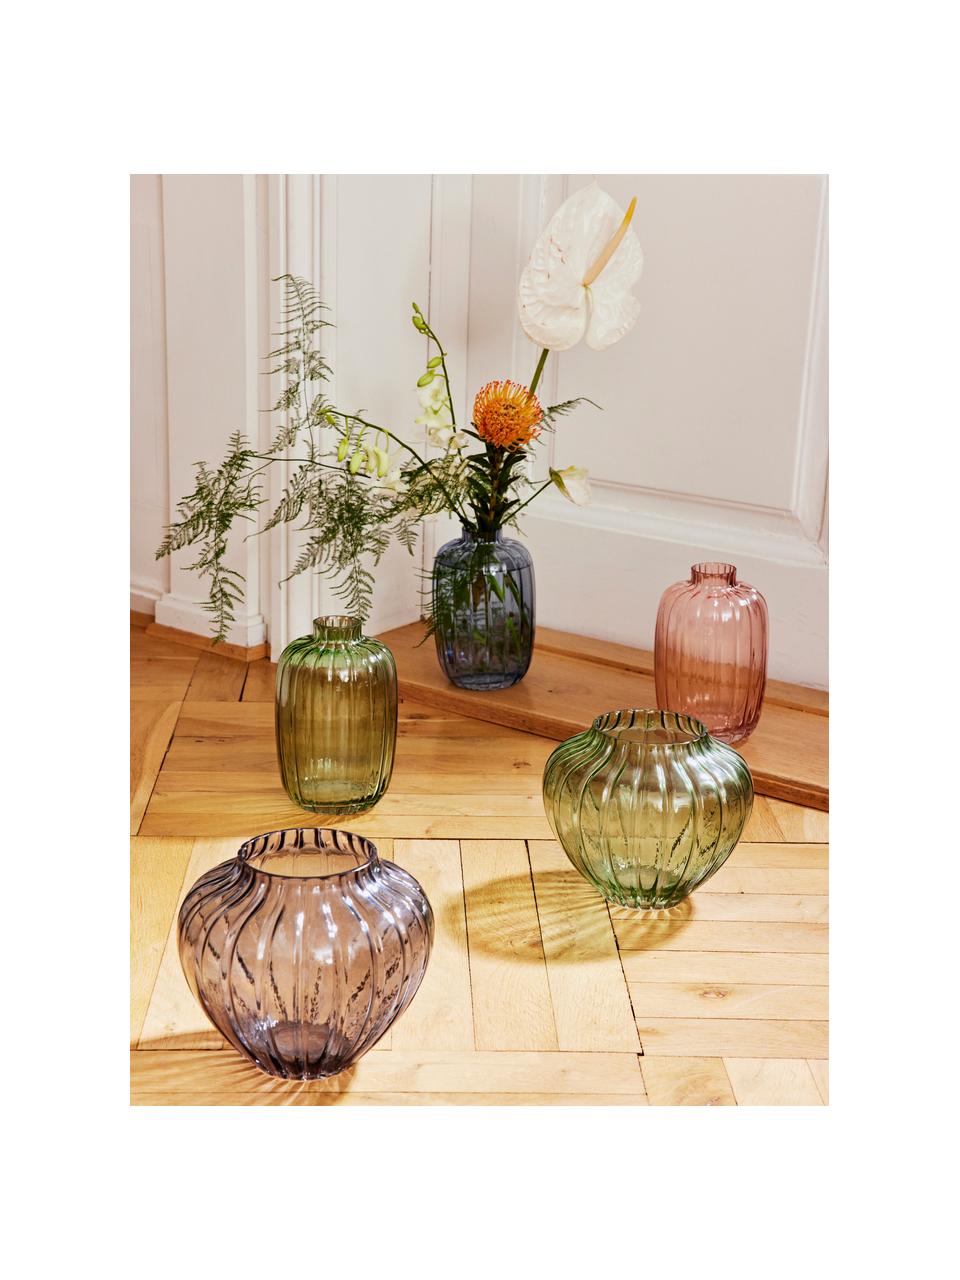 Skleněná váza Groove, Sklo, Zelená, transparentní, Ø 13 cm, V 20 cm